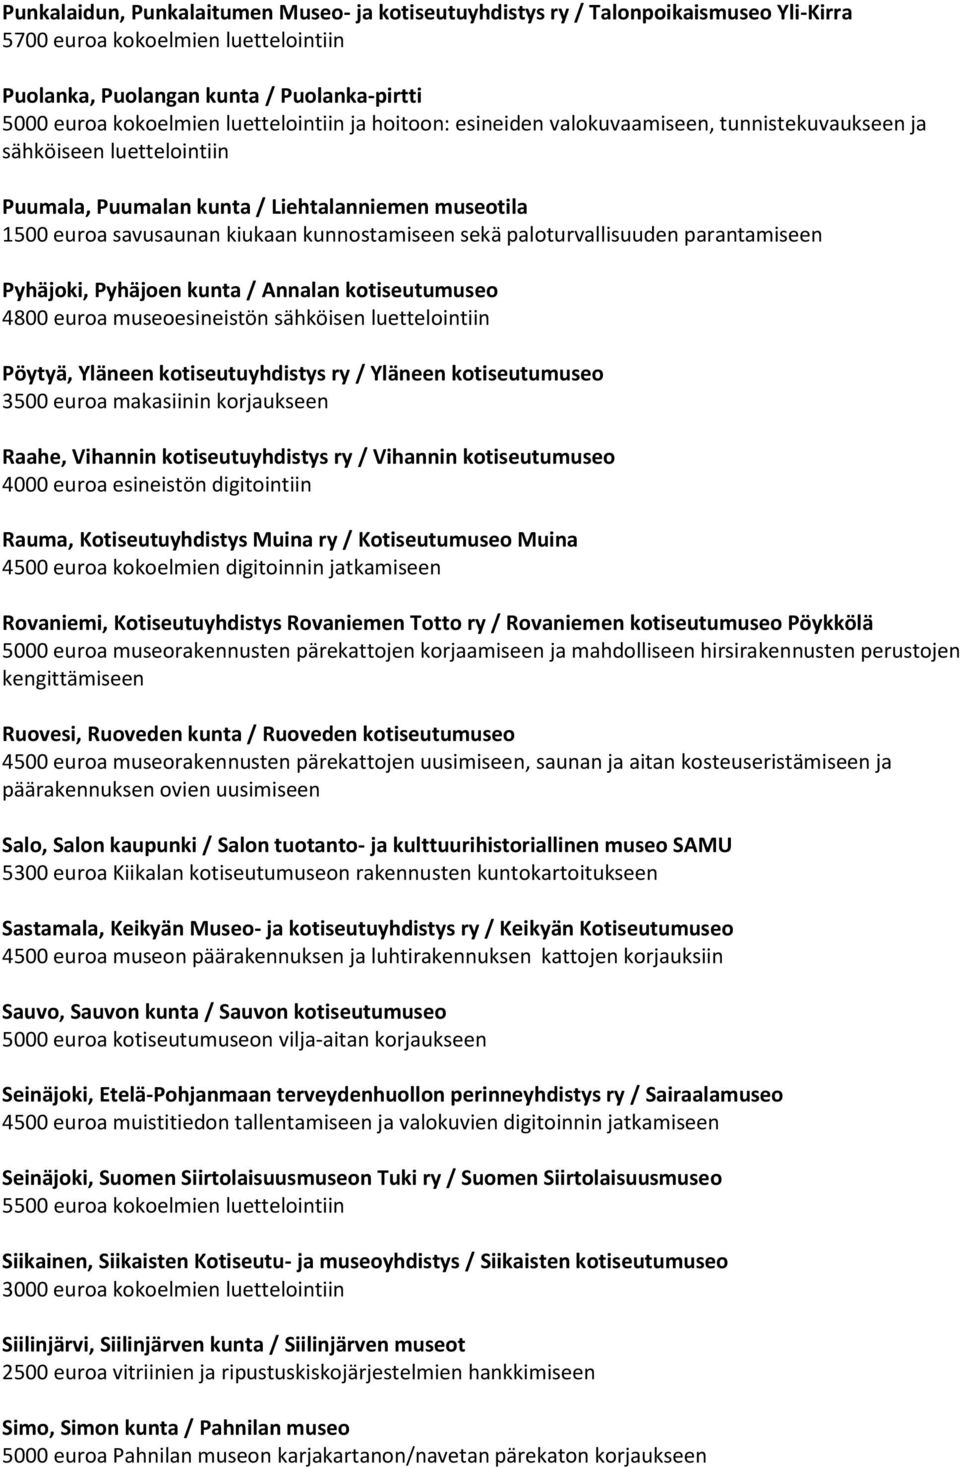 sekä paloturvallisuuden parantamiseen Pyhäjoki, Pyhäjoen kunta / Annalan kotiseutumuseo 4800 euroa museoesineistön sähköisen luettelointiin Pöytyä, Yläneen kotiseutuyhdistys ry / Yläneen